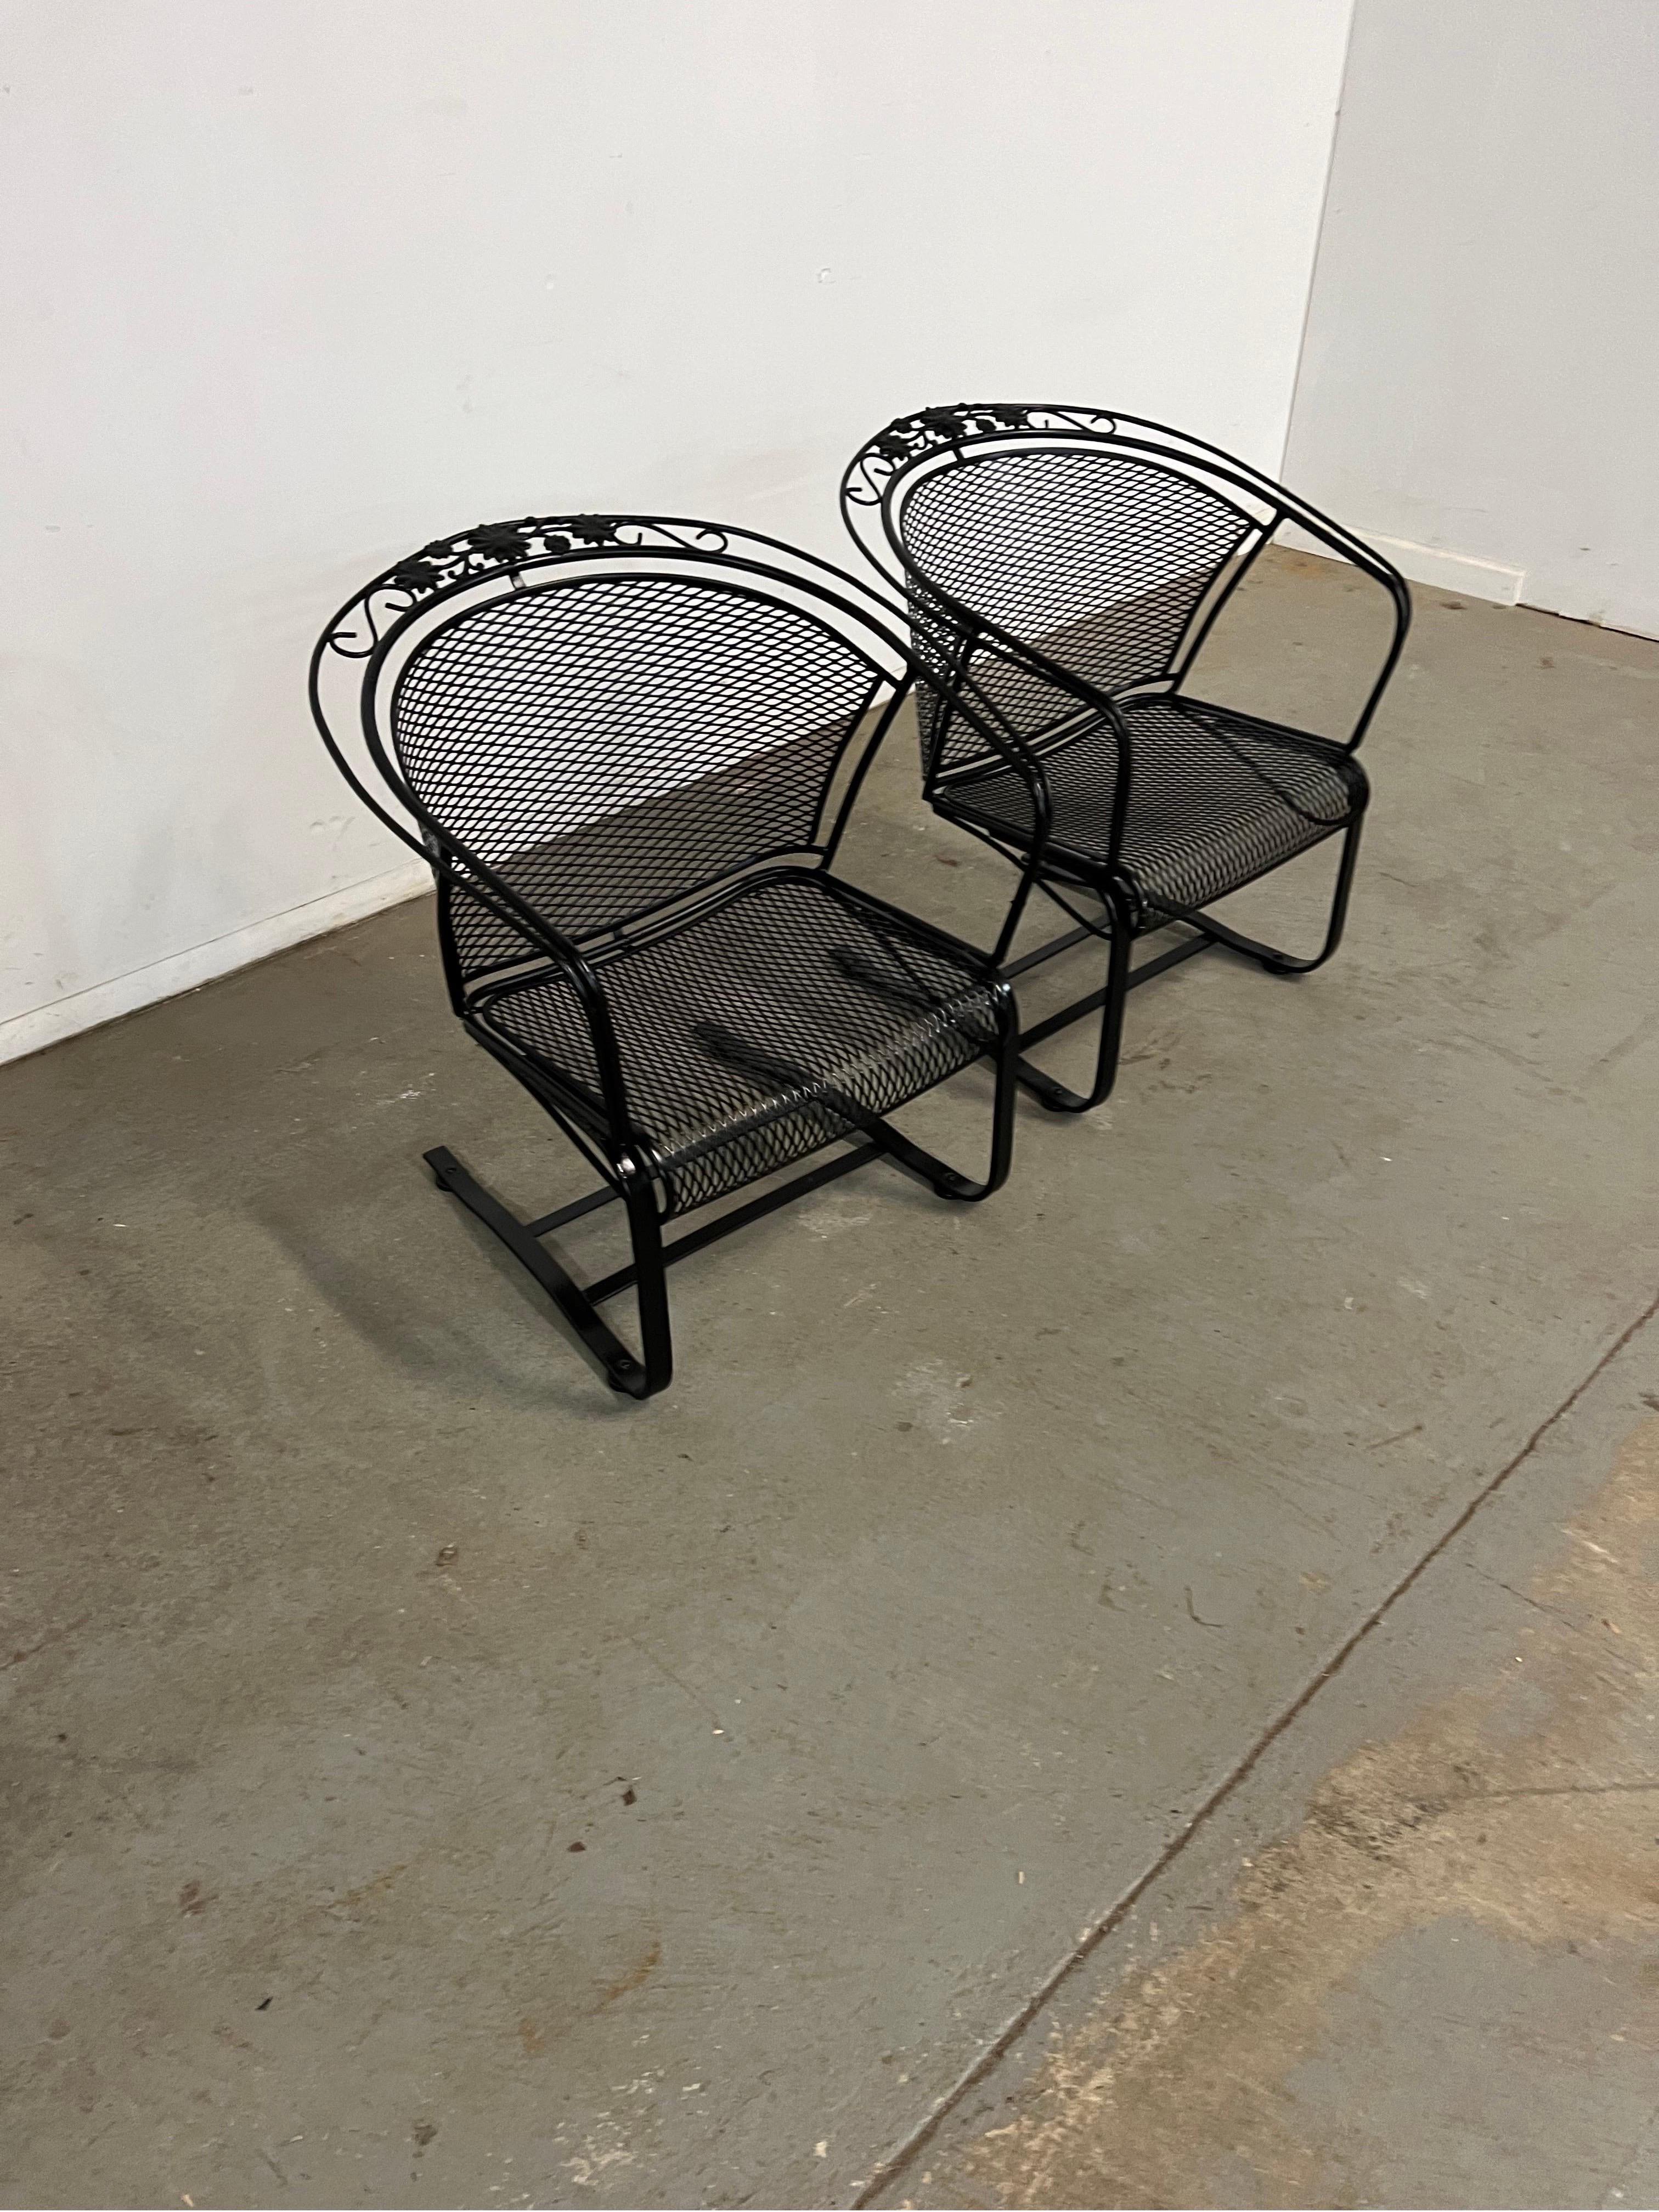 Lot de 2 chaises d'extérieur à dossier incurvé Cantilever/Springer Mid-Century Modern Salterini
Nous vous proposons un fauteuil d'extérieur Cantilever/Springer à dossier incurvé de style Salterini (circa 1960's). Le fer forgé émaillé et tressé